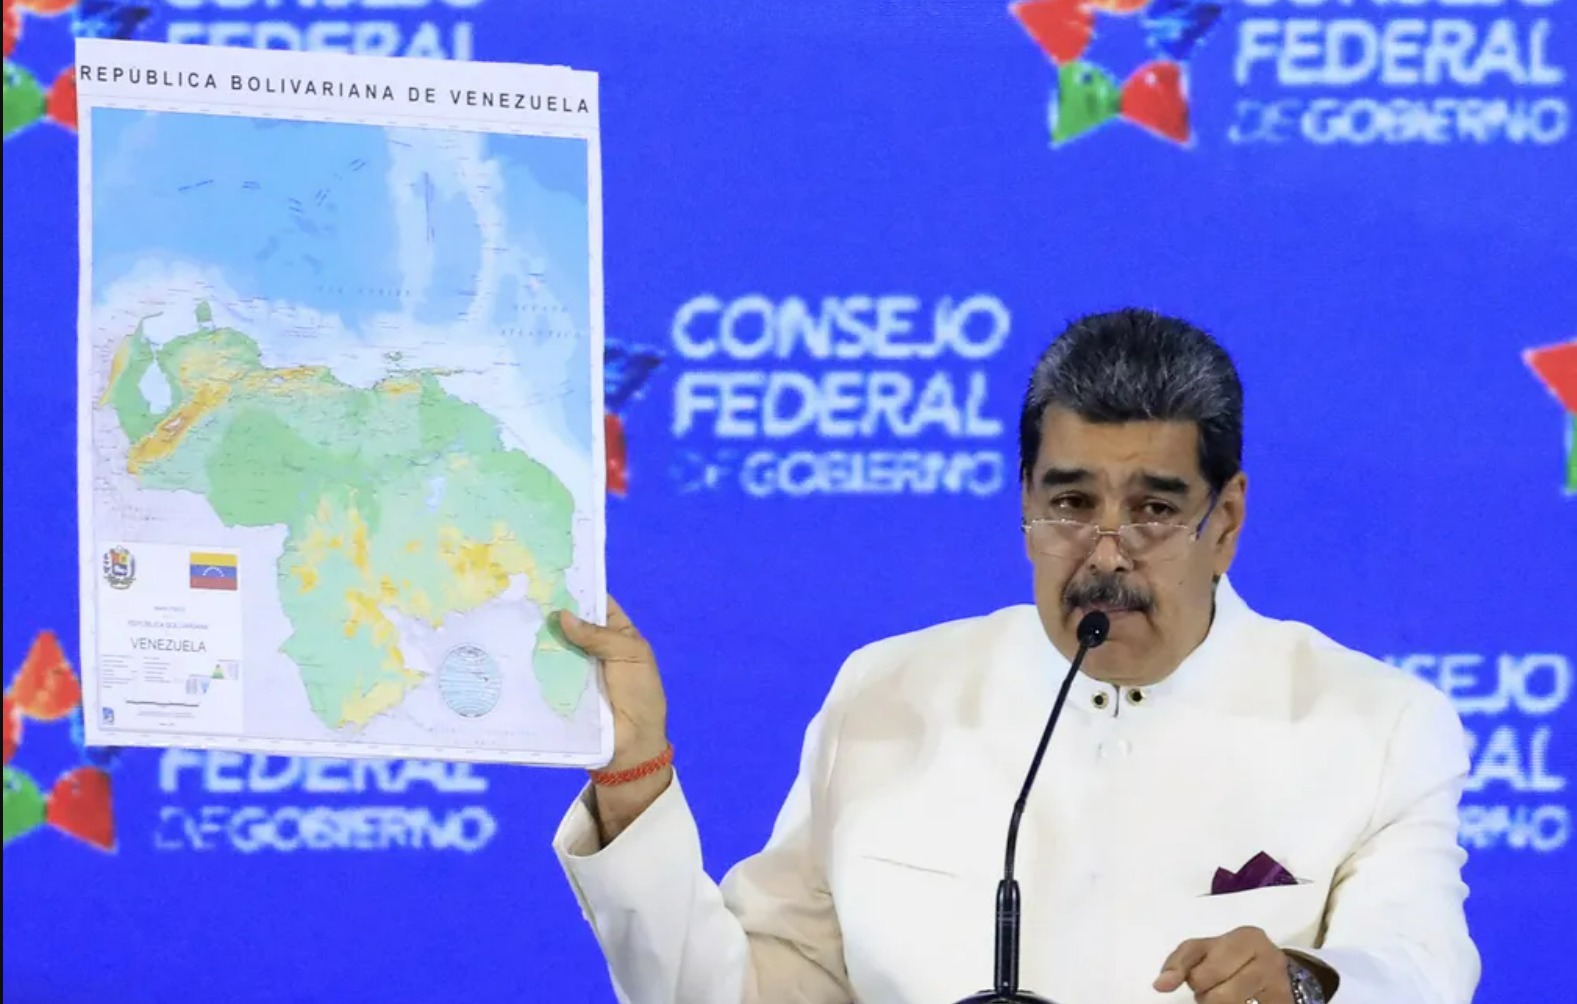 Nicolás Maduro anunciou um novo mapa político da Venezuela, agora incorporando a disputada região de Essequibo.